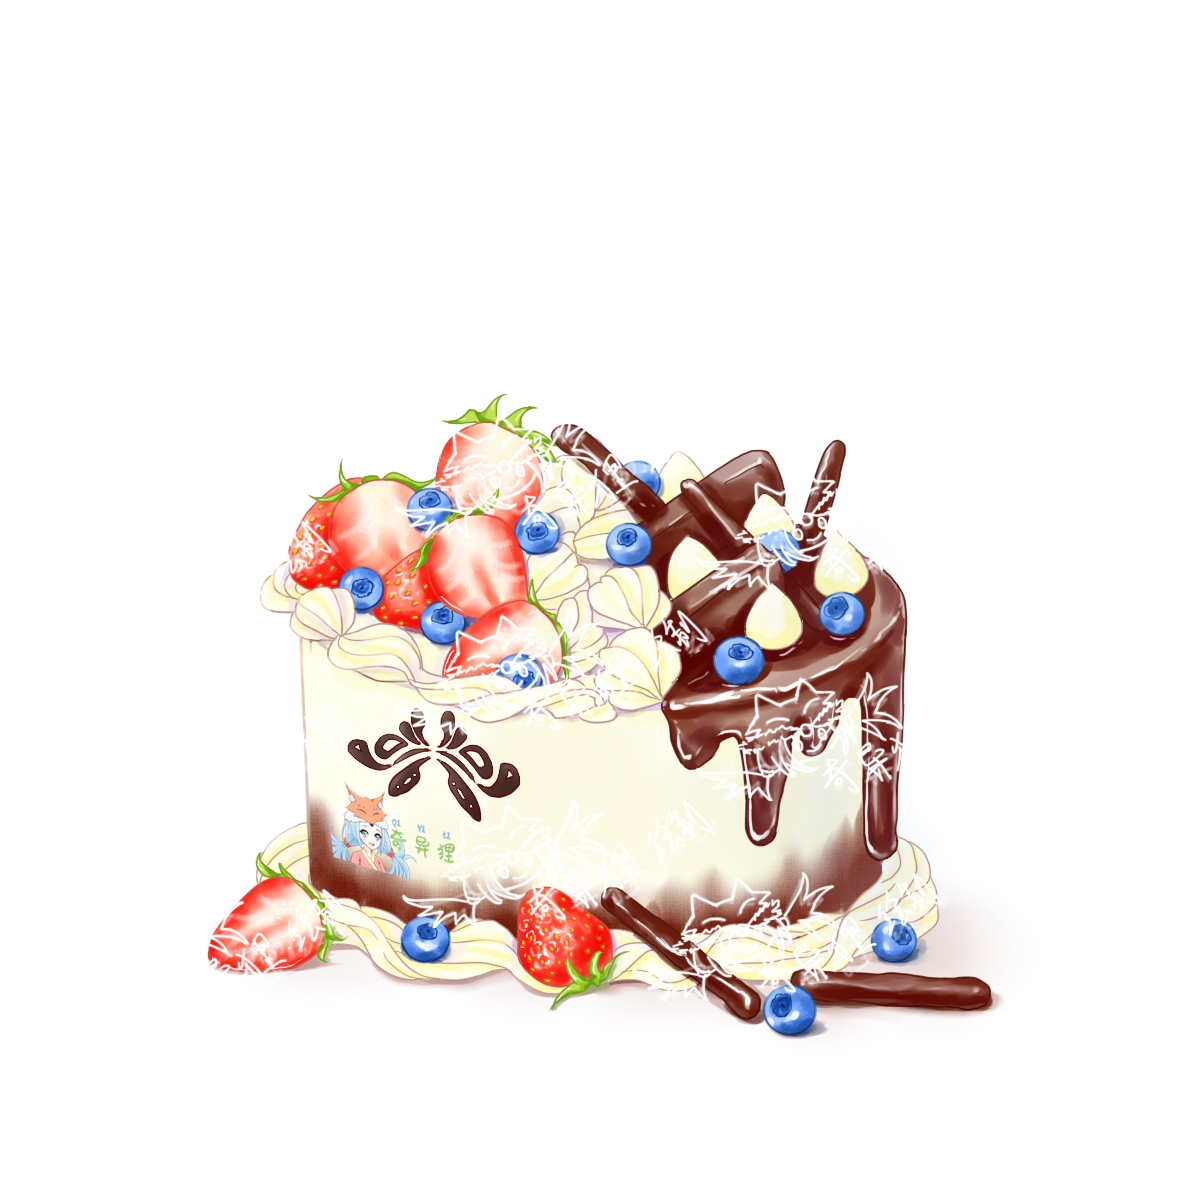 草莓巧克力双拼生贺蛋糕